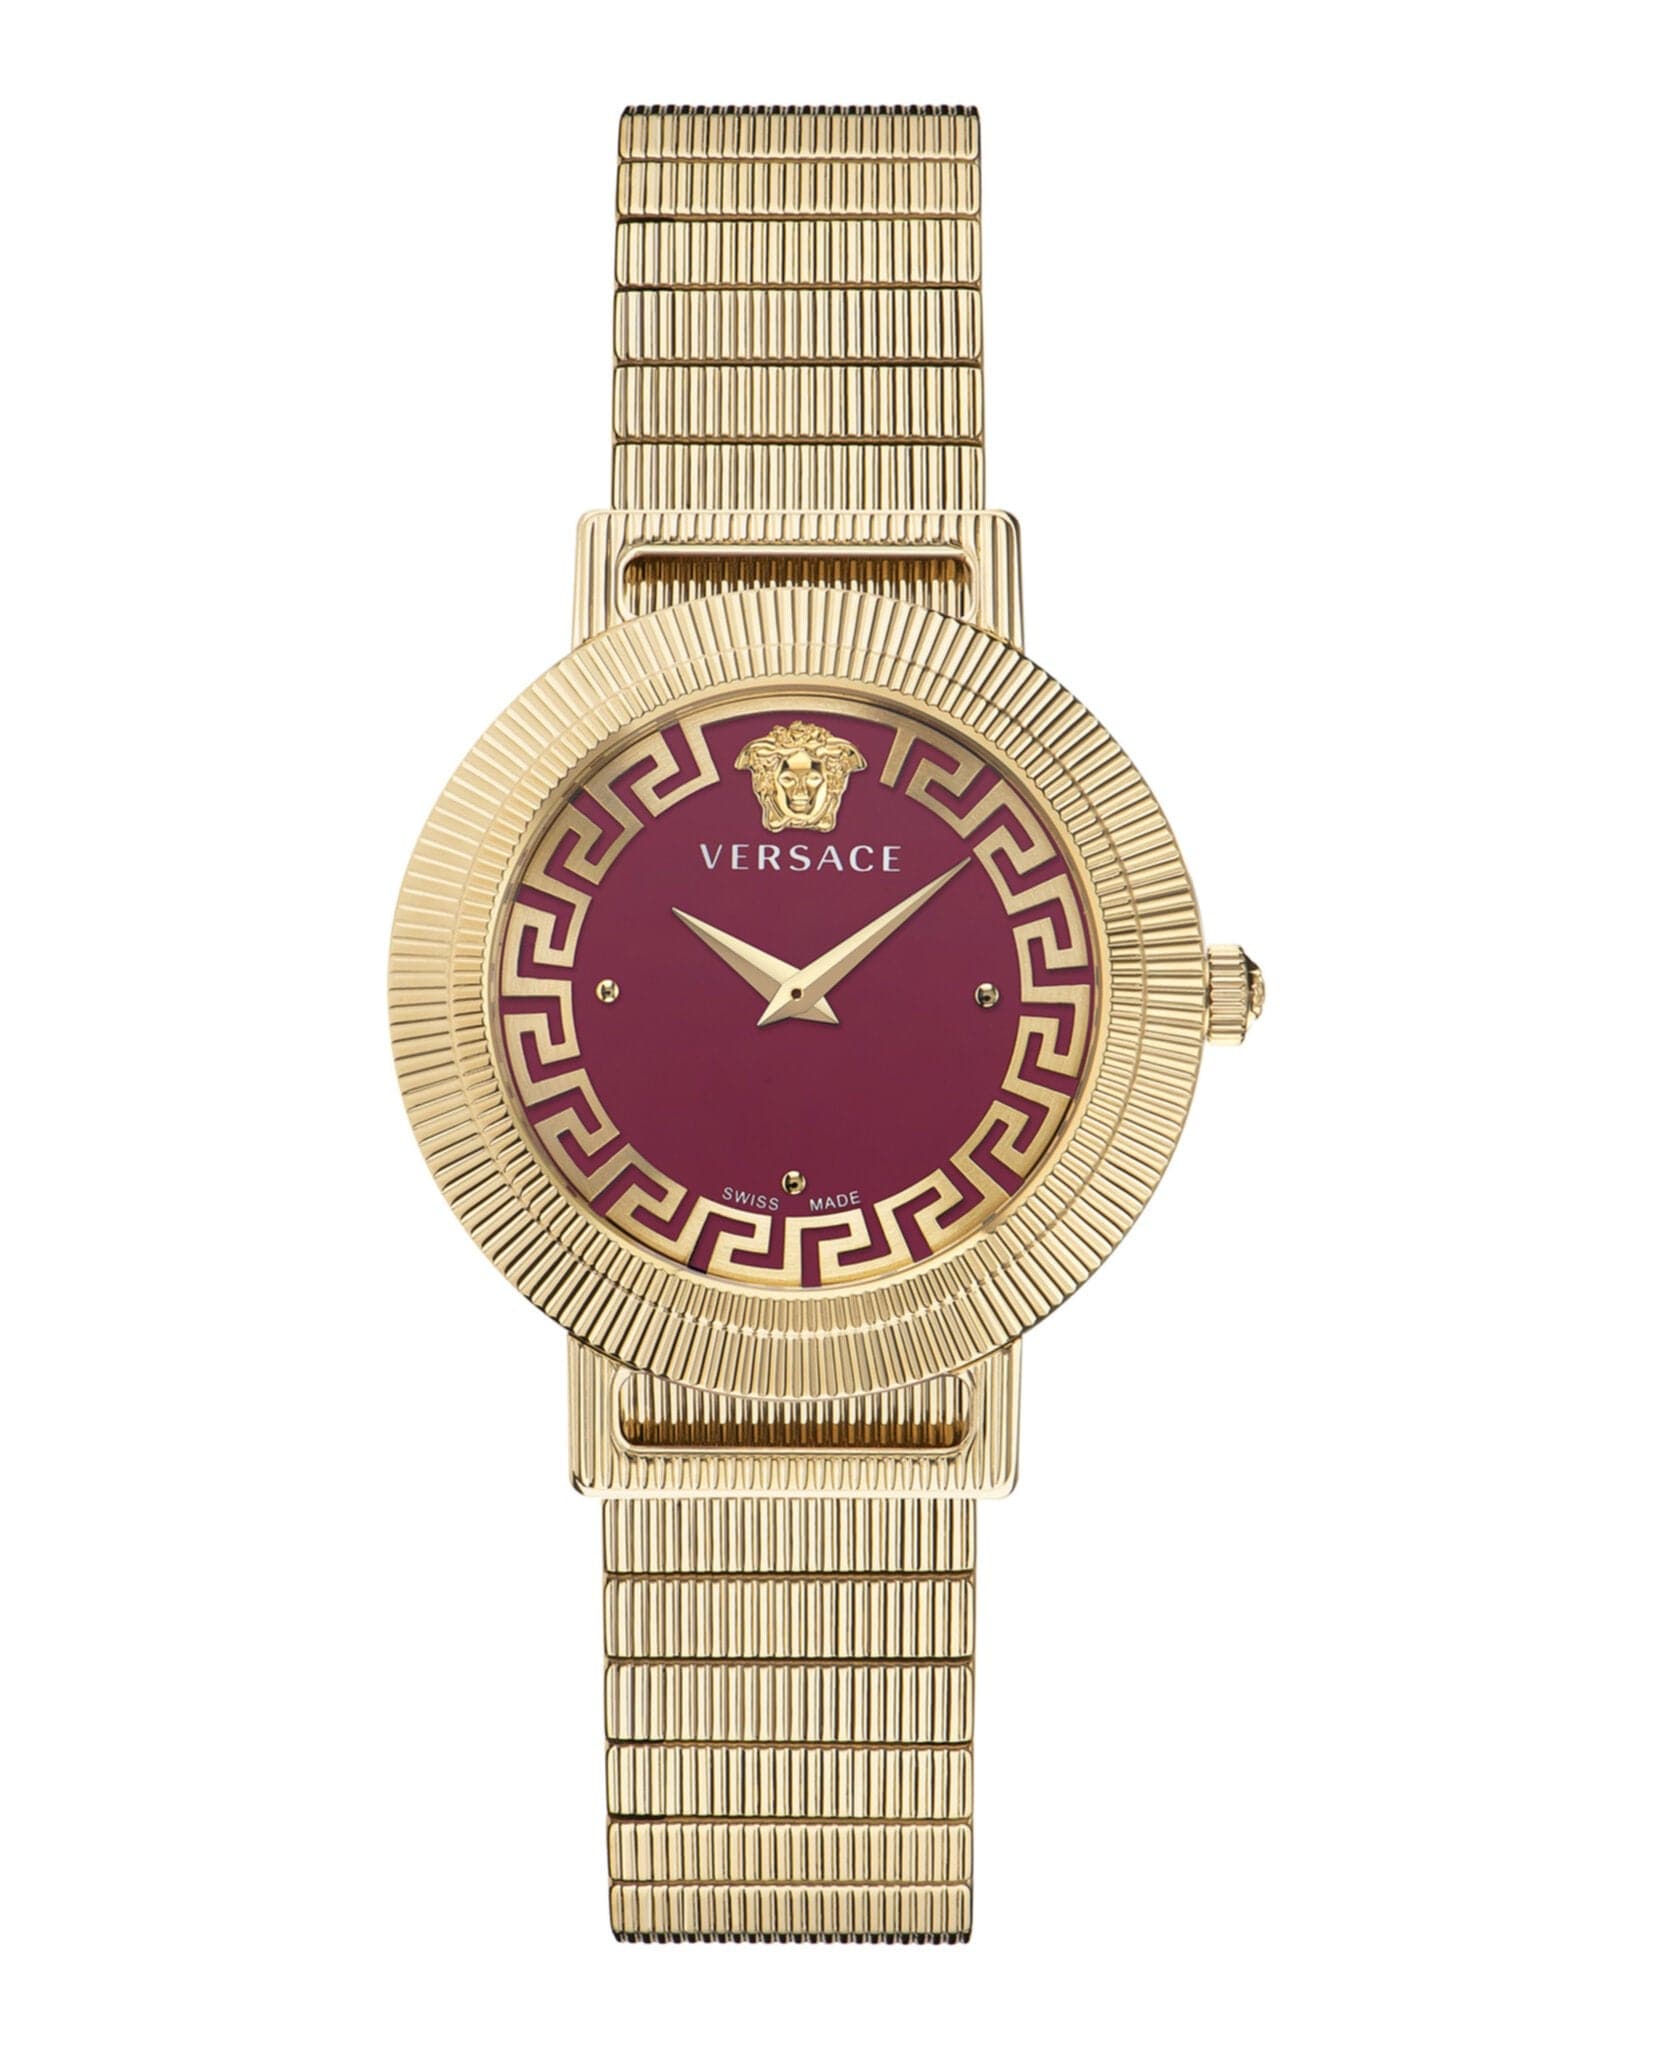 VERSACE Greca Chic Bracelet Watch VE3D00622 - Kamal Watch Company